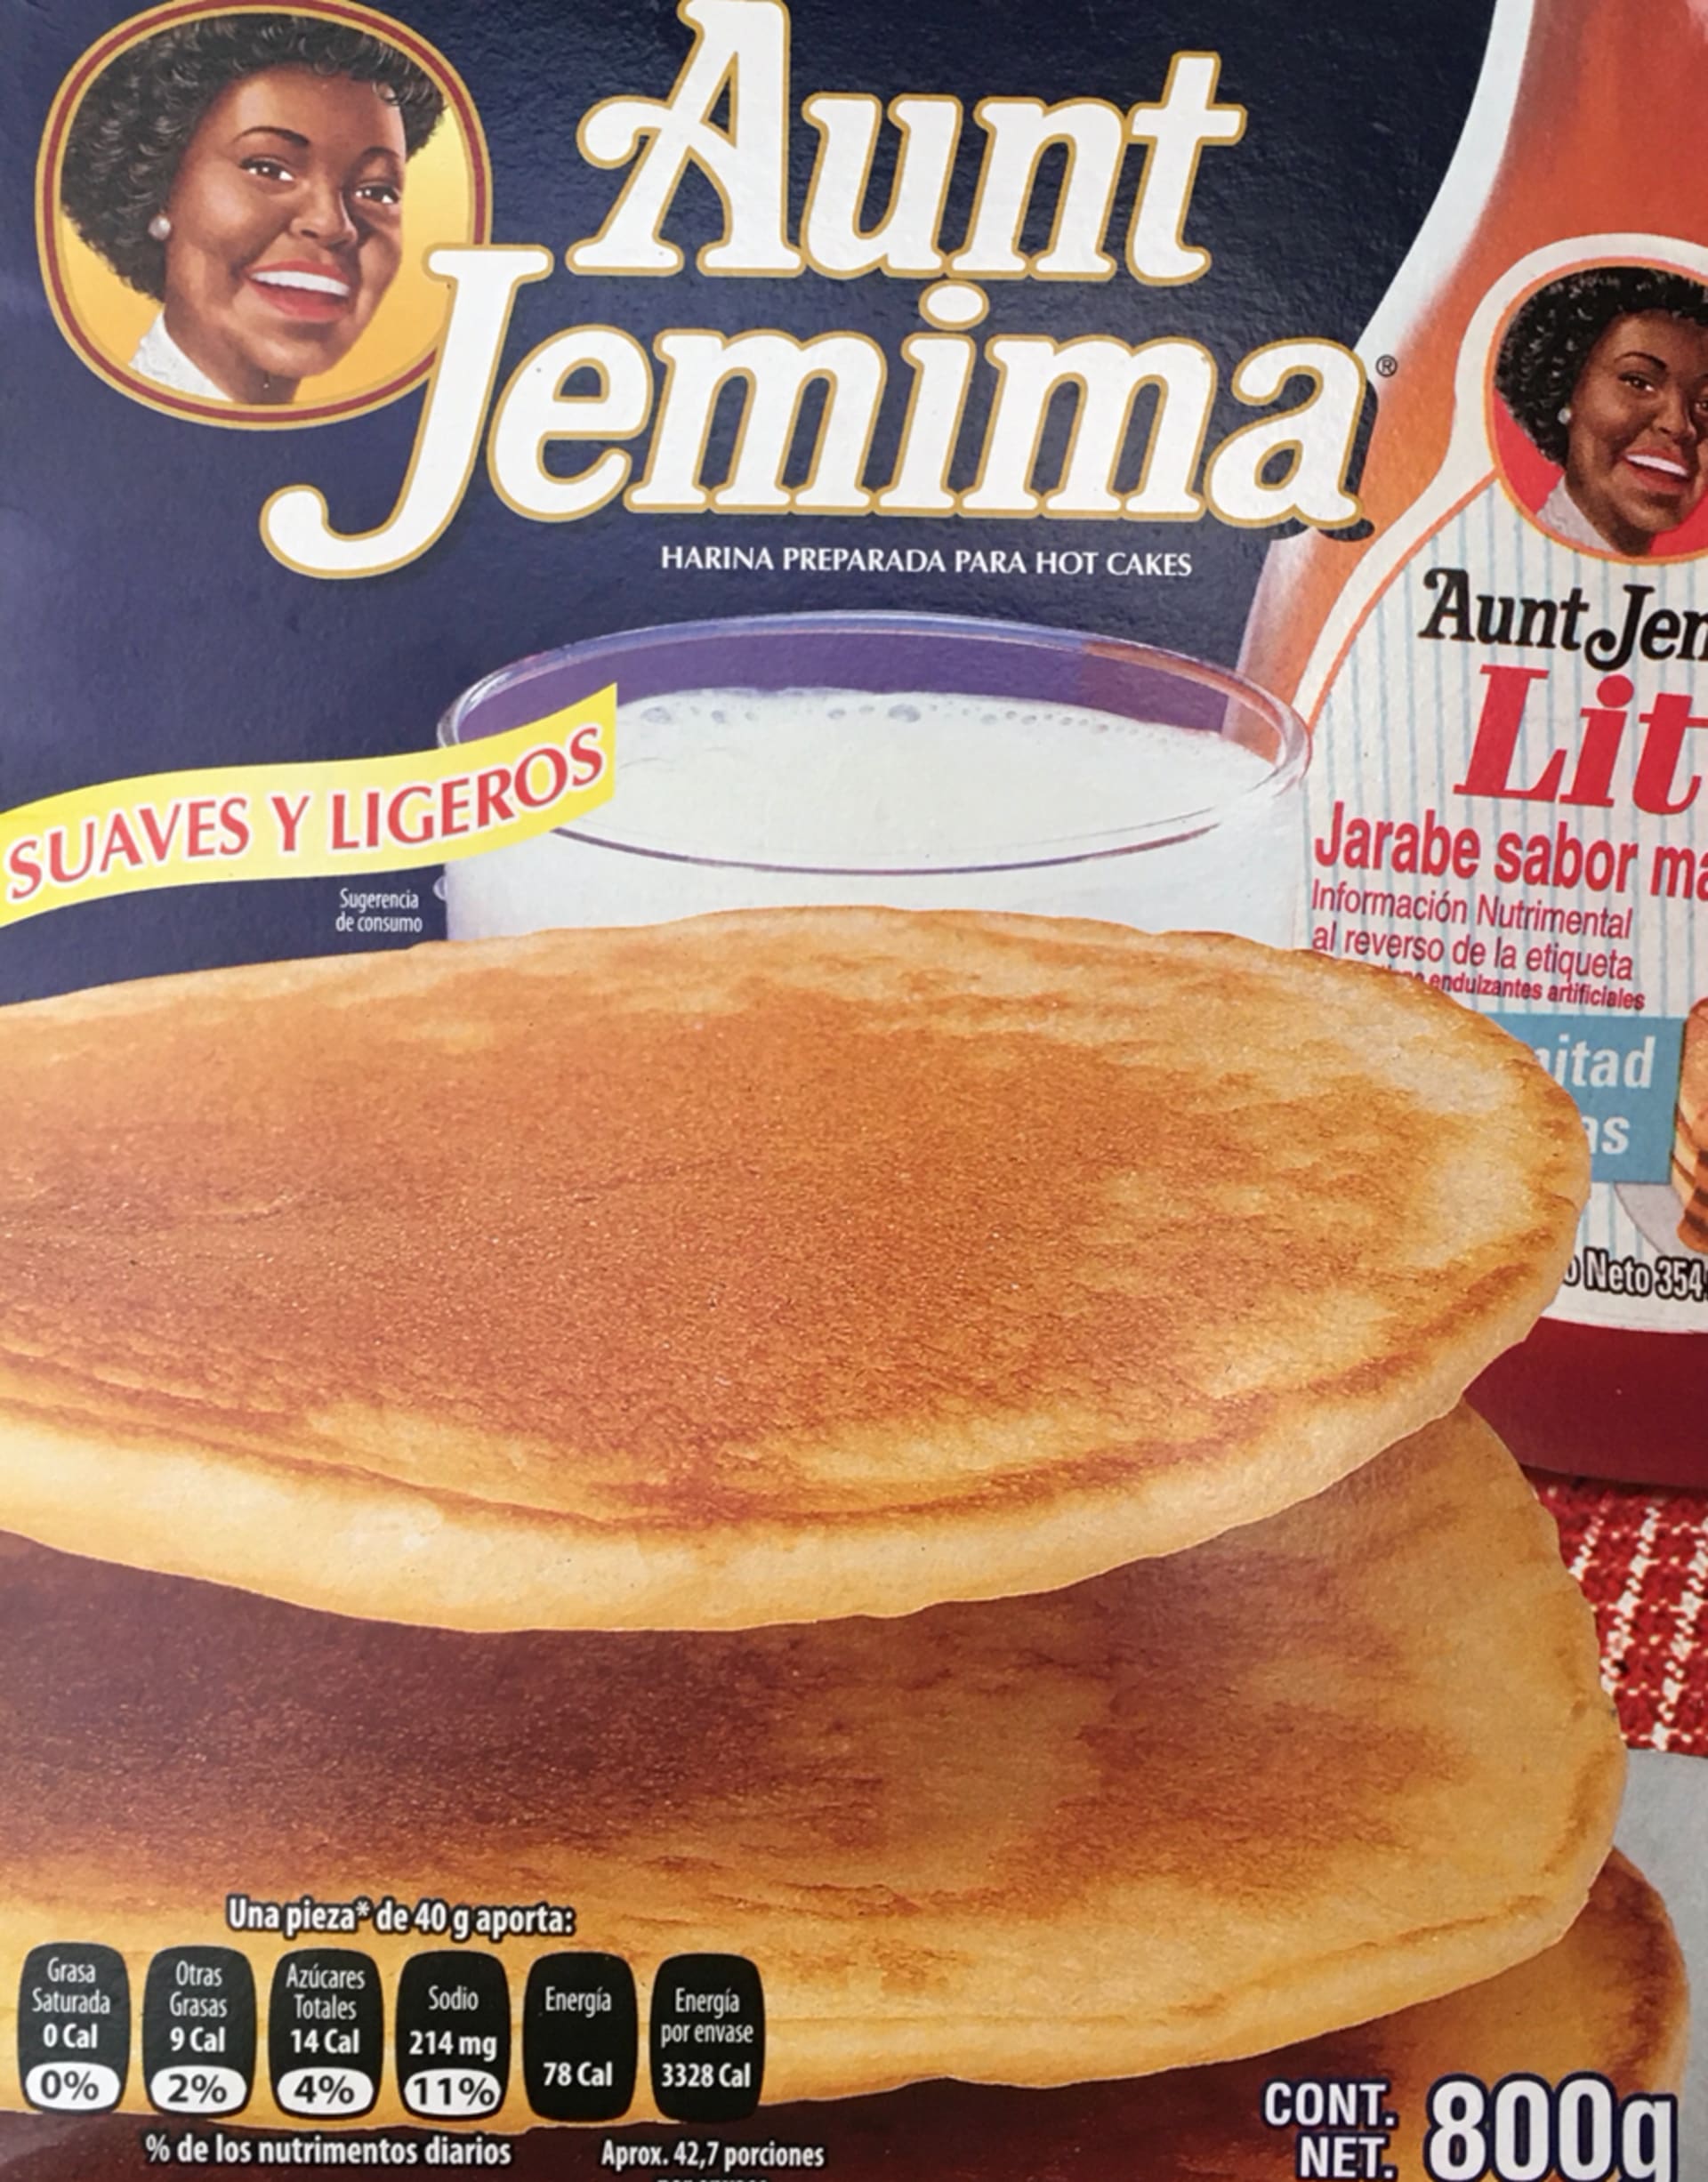 Změny zasáhly i produkty jako například značky Aunt Jemima. 